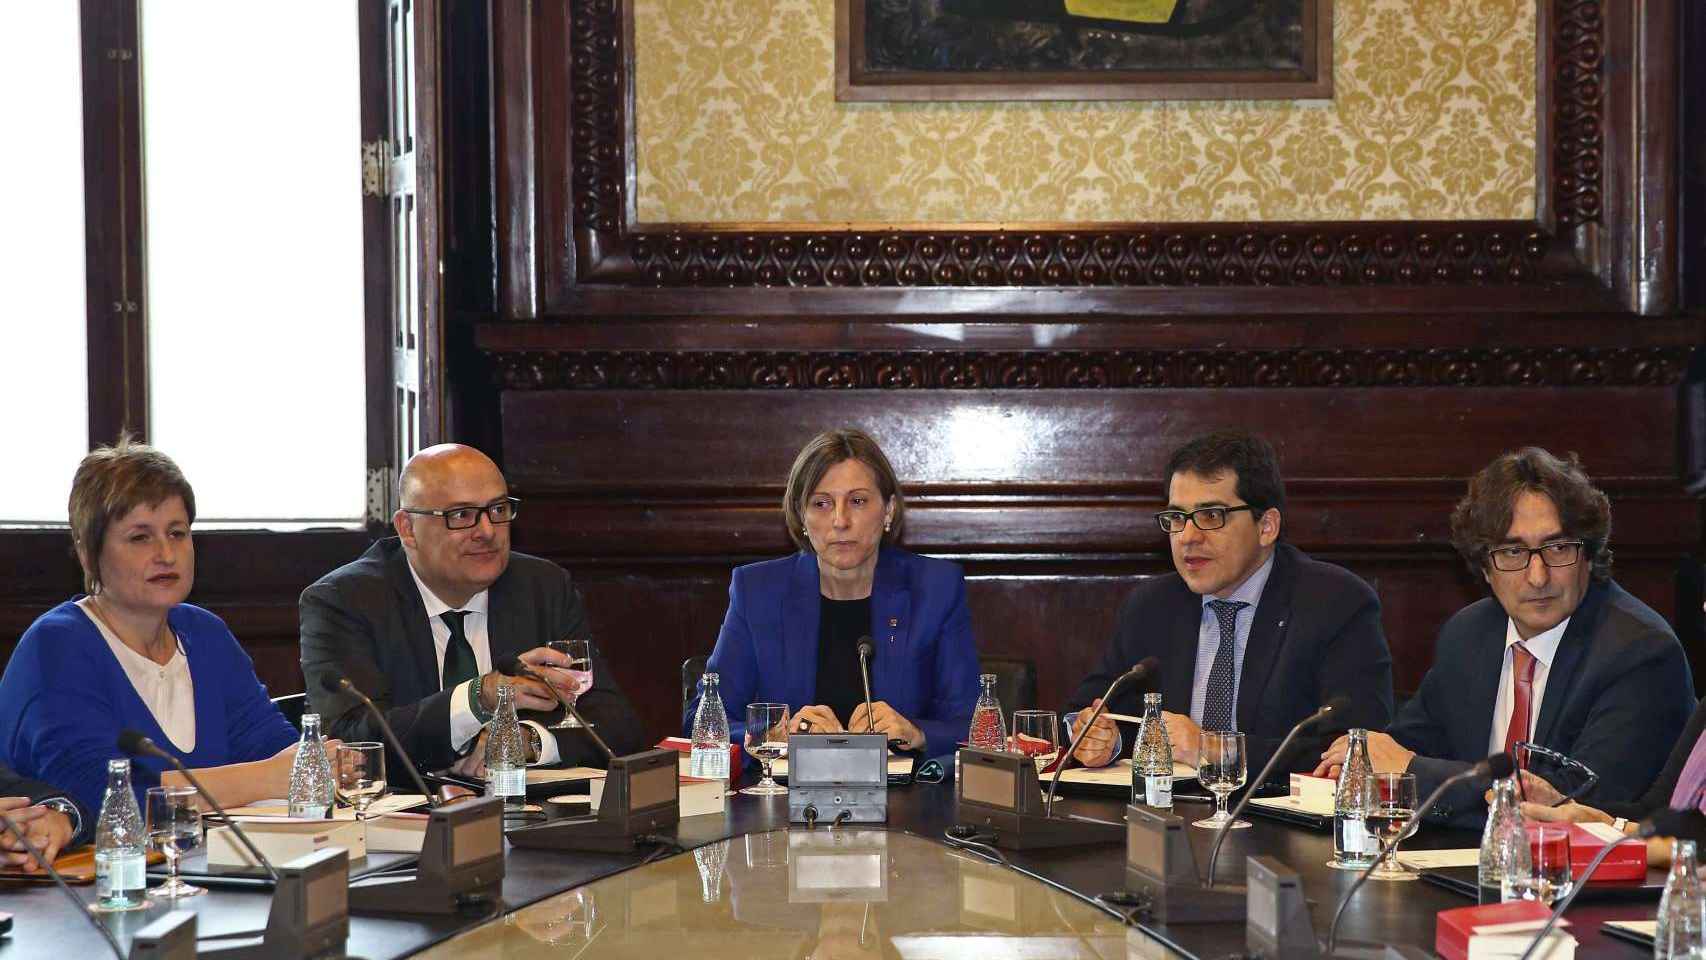 La presidenta del Parlament catalán, Carme Forcadell, preside una reunión de la Junta de Portavoces